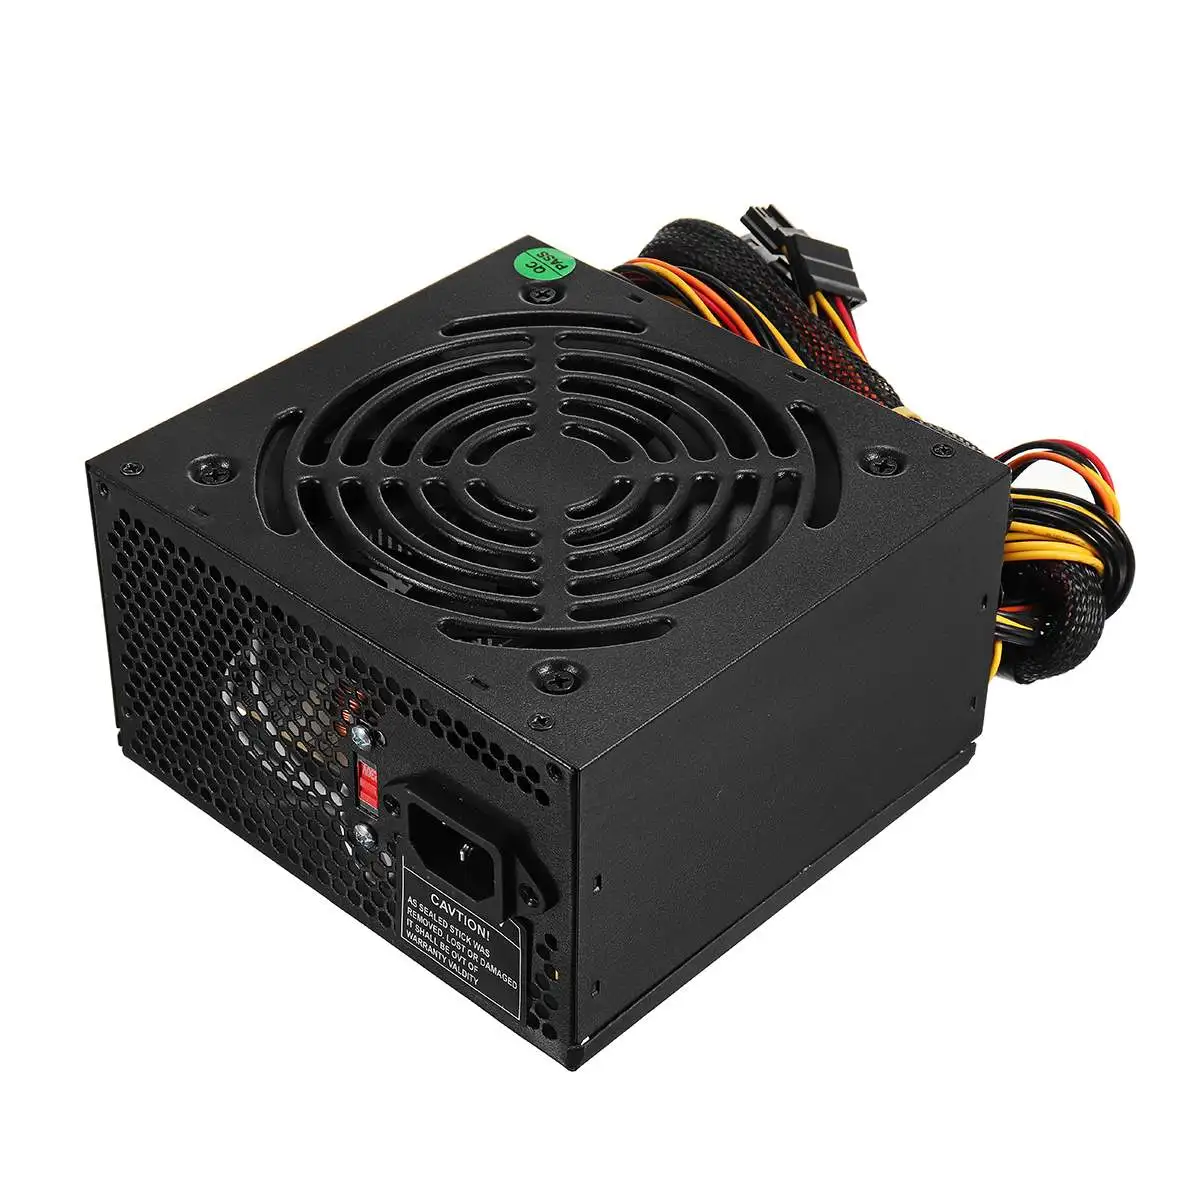 Max 1000 Вт блок питания PSU PFC бесшумный вентилятор ATX 24pin 12 в компьютер SATA игровой ПК блок питания для Intel AMD компьютер Черный